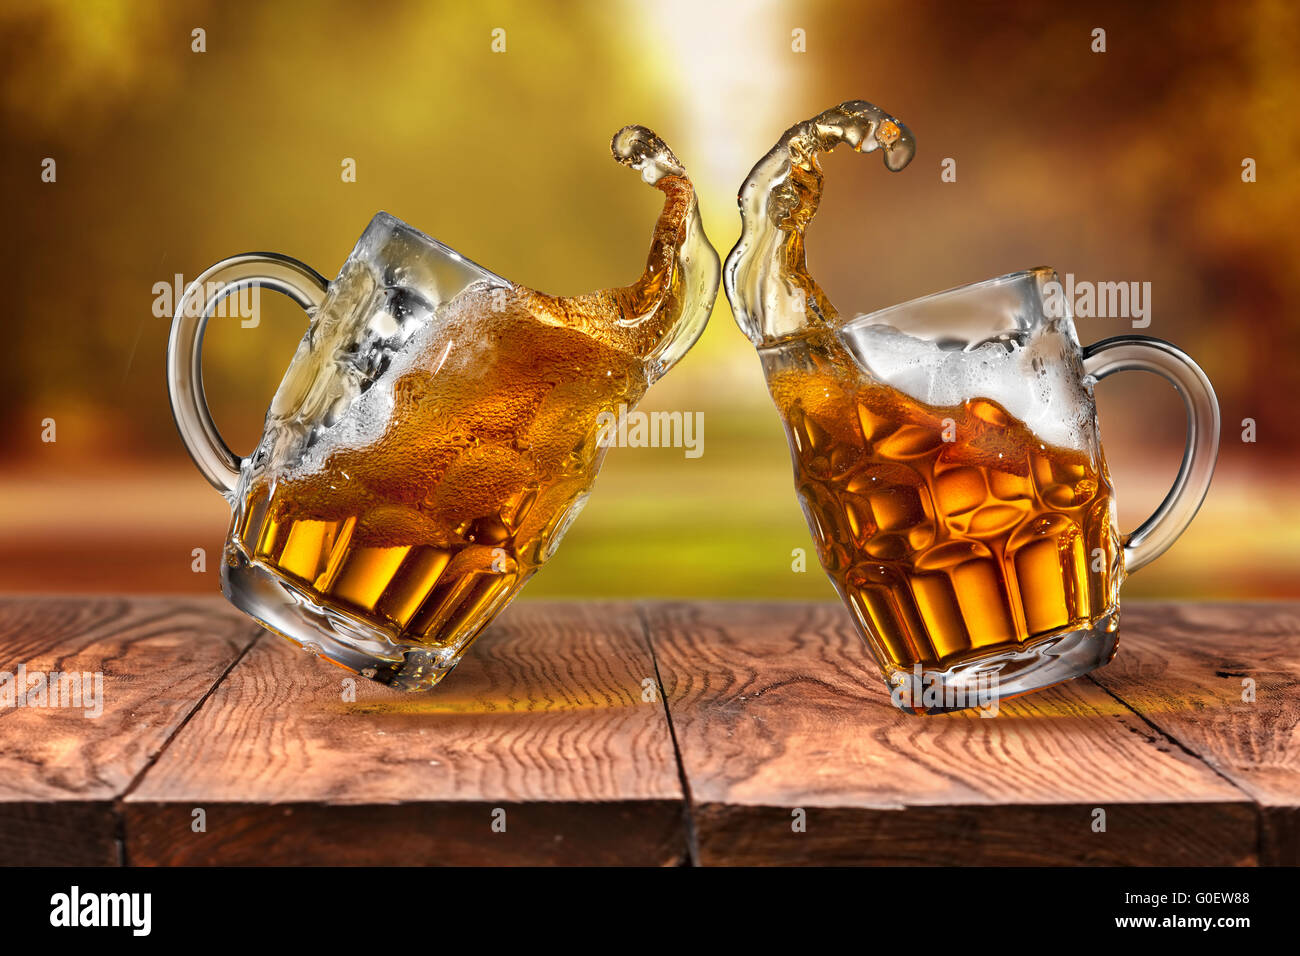 La bière dans des verres avec des vagues sur la table en bois contre les feuilles d'automne Banque D'Images